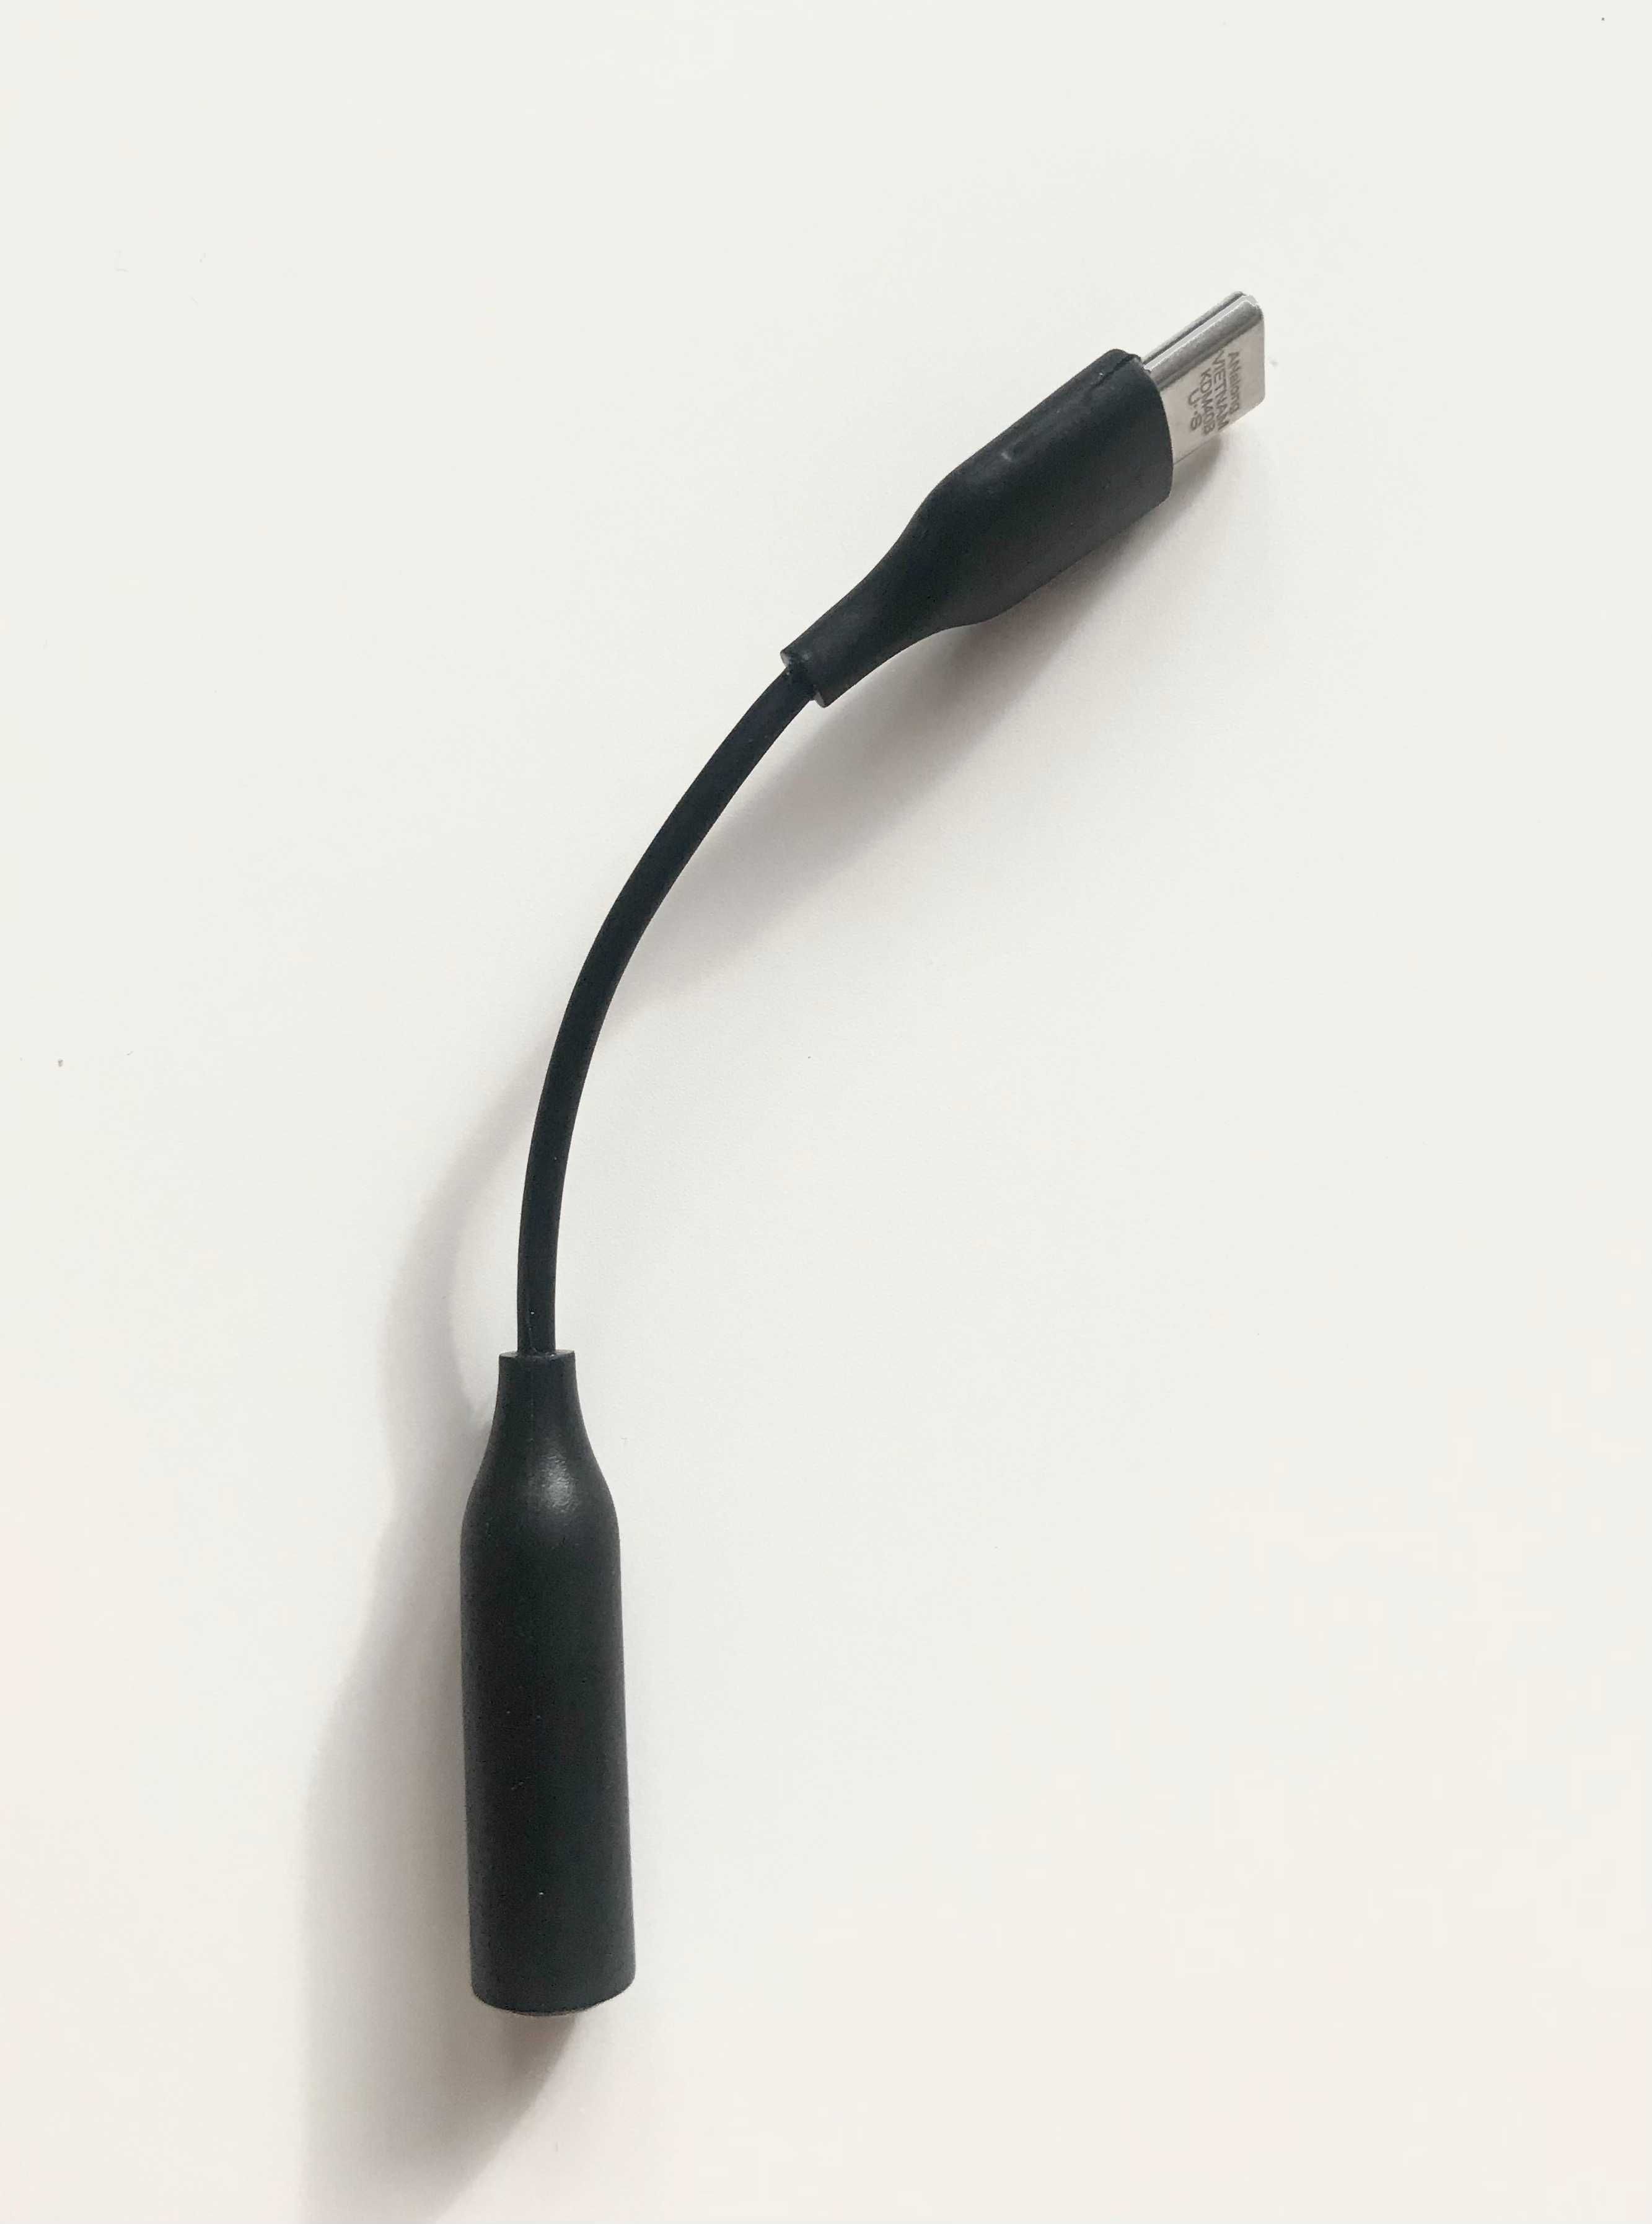 Kabel Przejściówka USB-C na AUX Adapter do Samsunga Typu C 3,5mm Jack